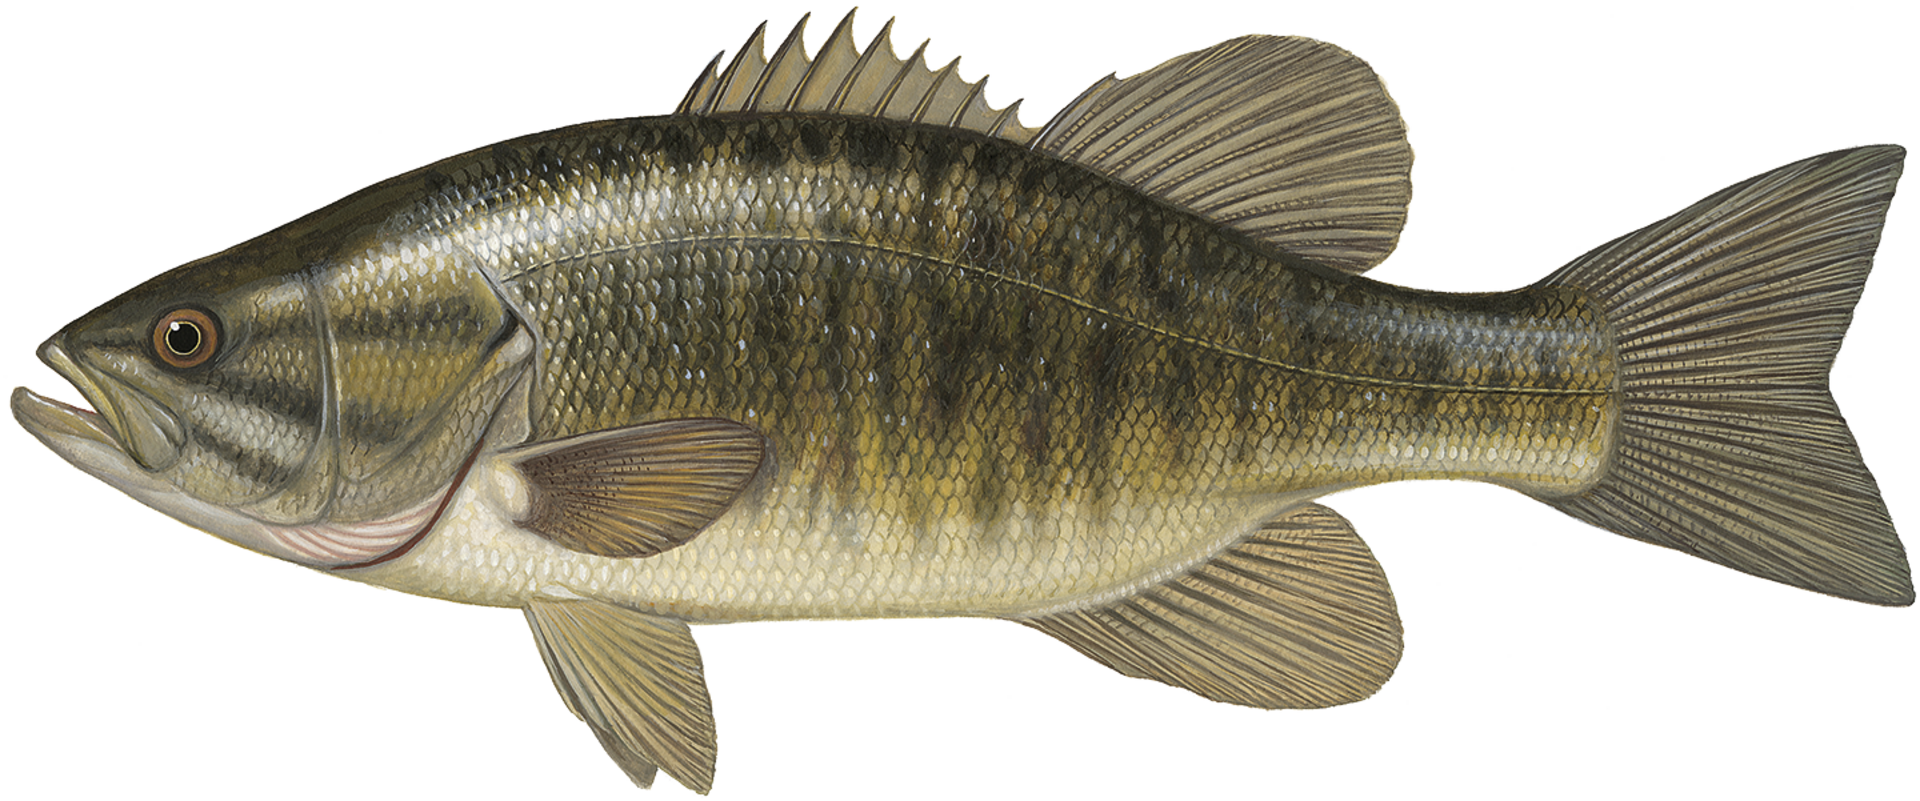  Smallmouth Bass (Micropterus dolomieui): Beim kleinmäuligen Schwarzbarsch endet die Mundspalte vor dem hinteren Rand des Auges. Kopf und Rücken sind bräunlich bis bronzefarben.  